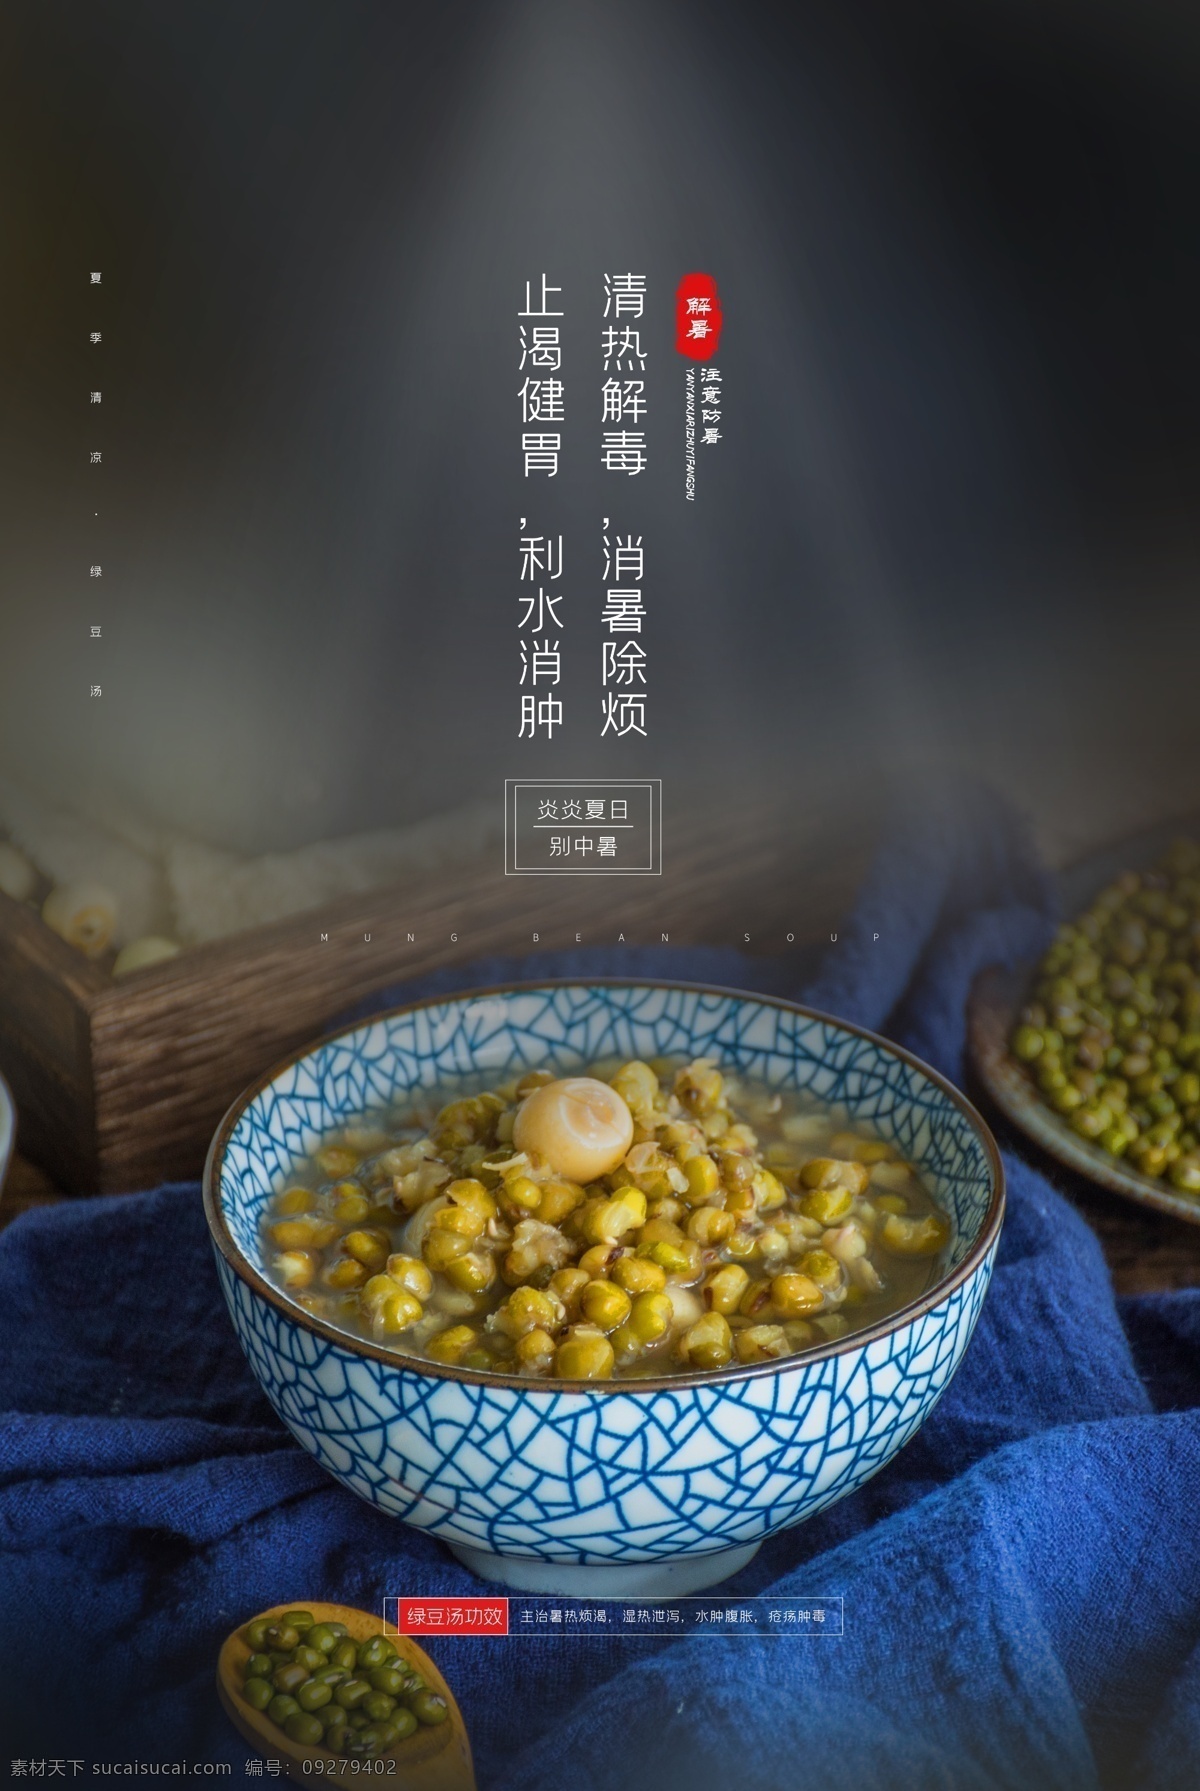 绿豆汤 美食 促销活动 宣传海报 促销 活动 宣传 海报 餐饮美食 类